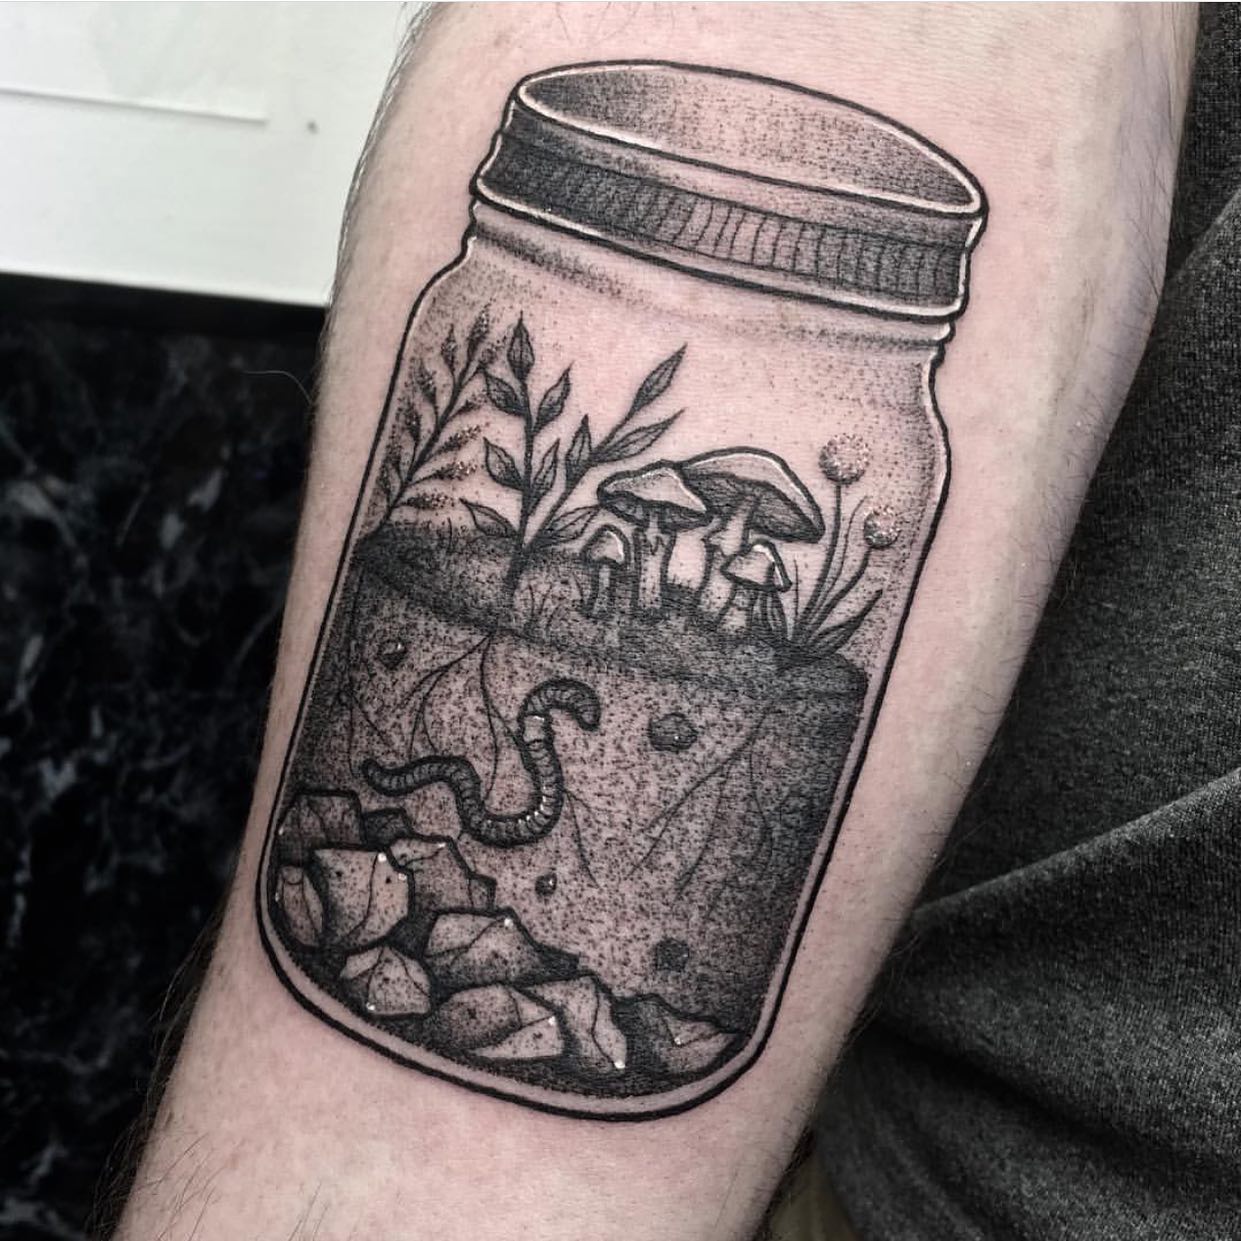 Share more than 69 jar of dirt tattoo best  ineteachers